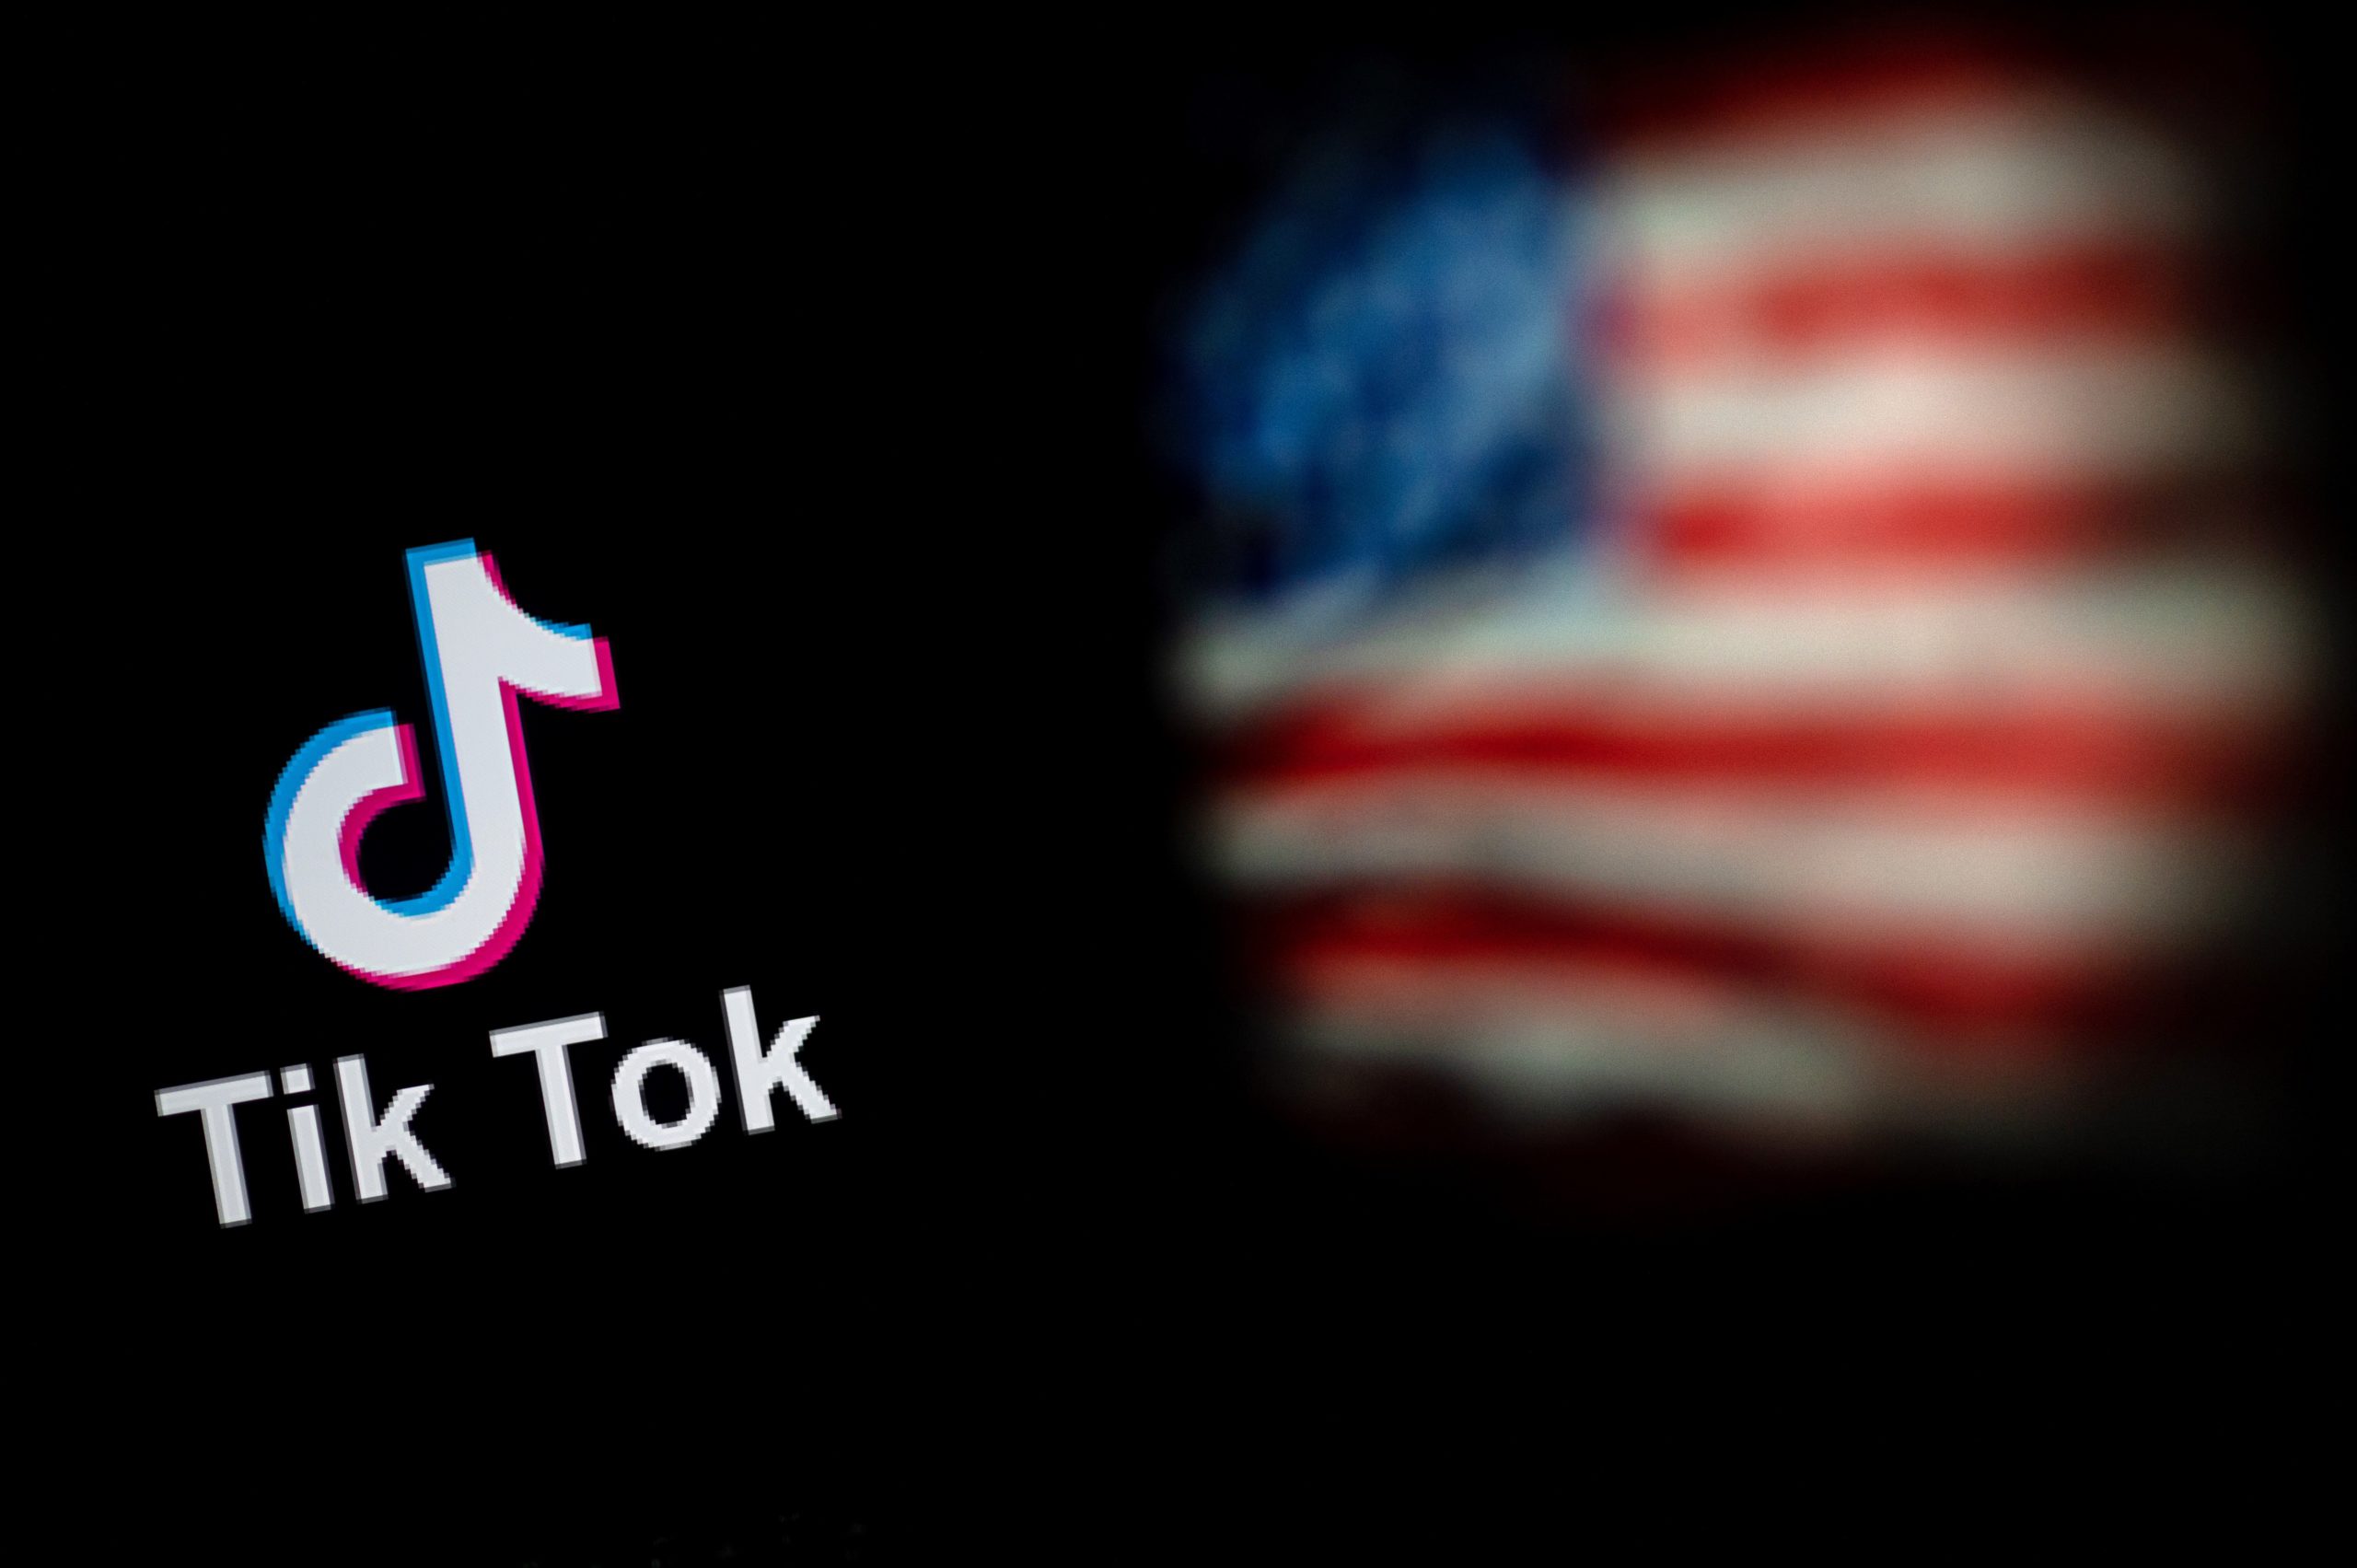 Casa Blanca da 30 días a agencias federales de EE.UU. para cumplir veto a TikTok